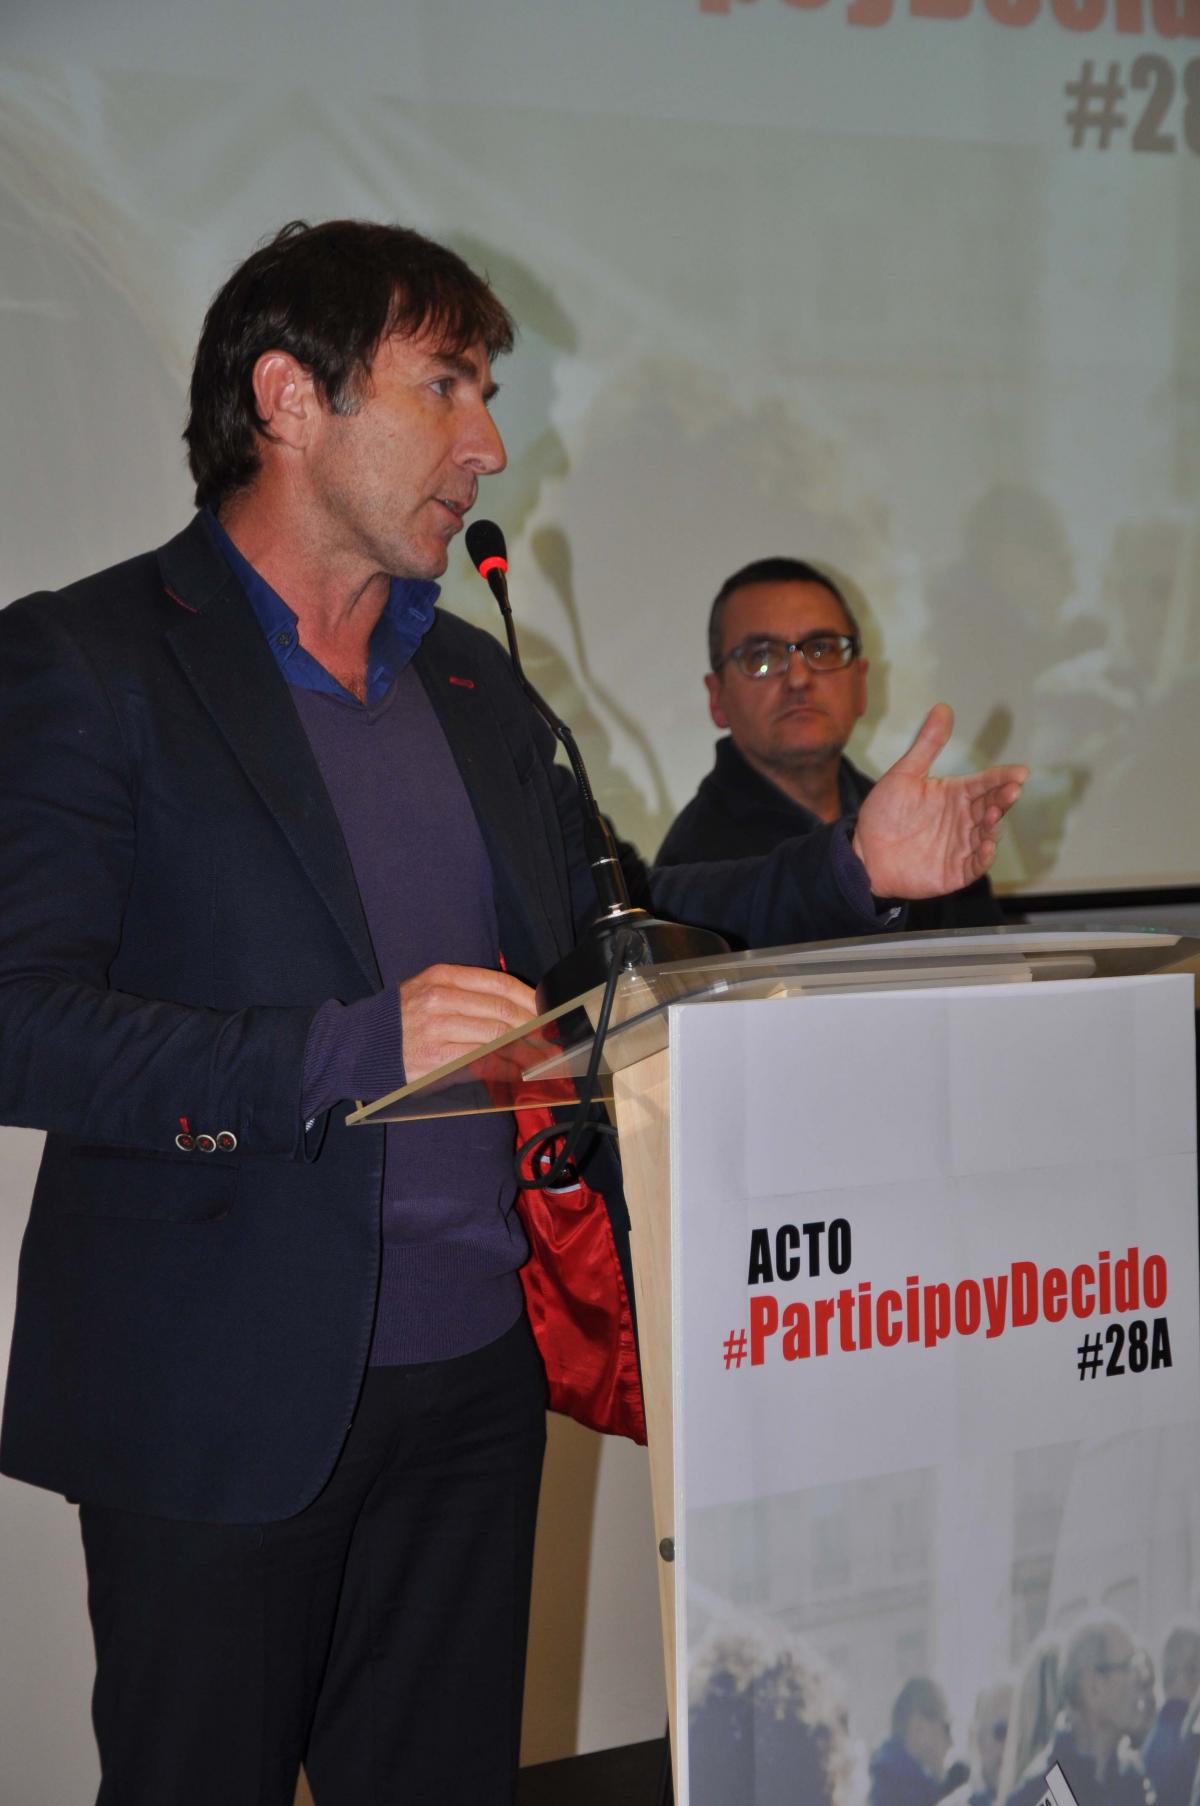 El actor Antonio de la Torre también participó y apoyó el acto